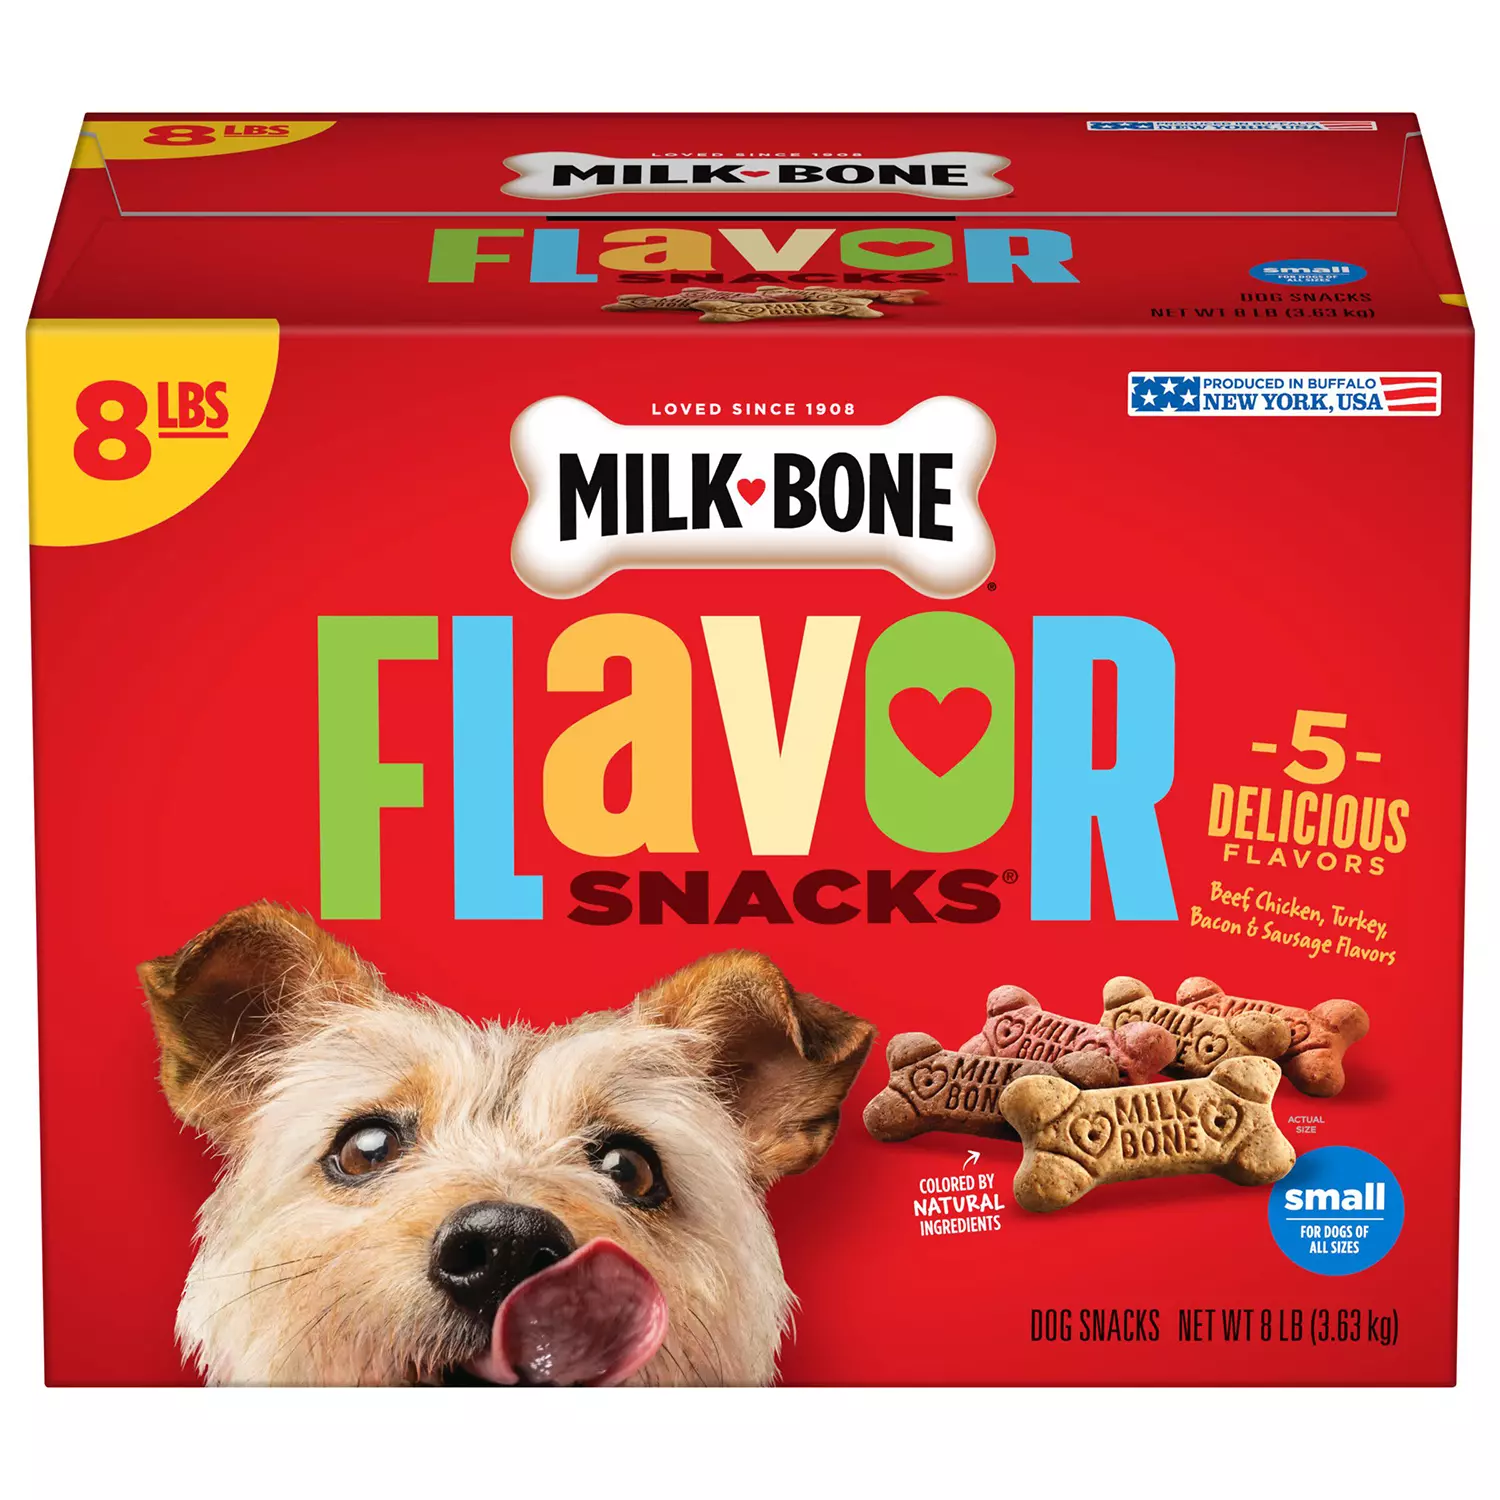 Delicious Milk-Bone Flavor Snacks |